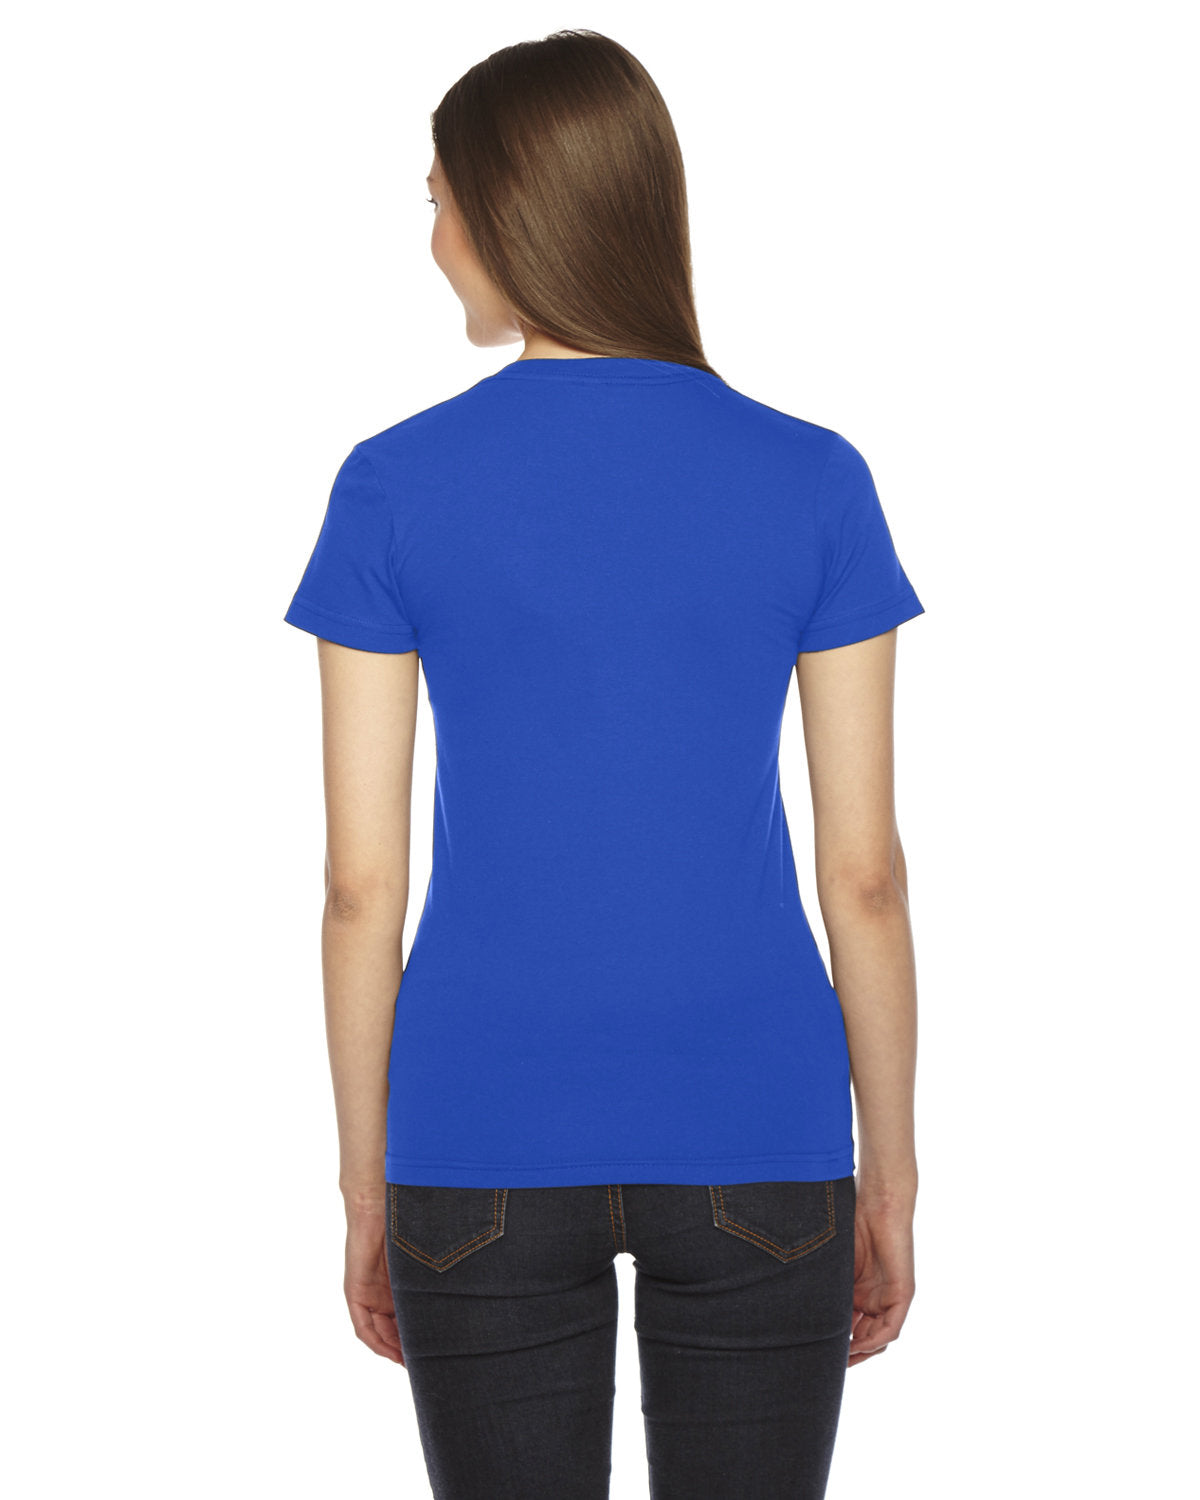 Royal blue t-shirt, back view.